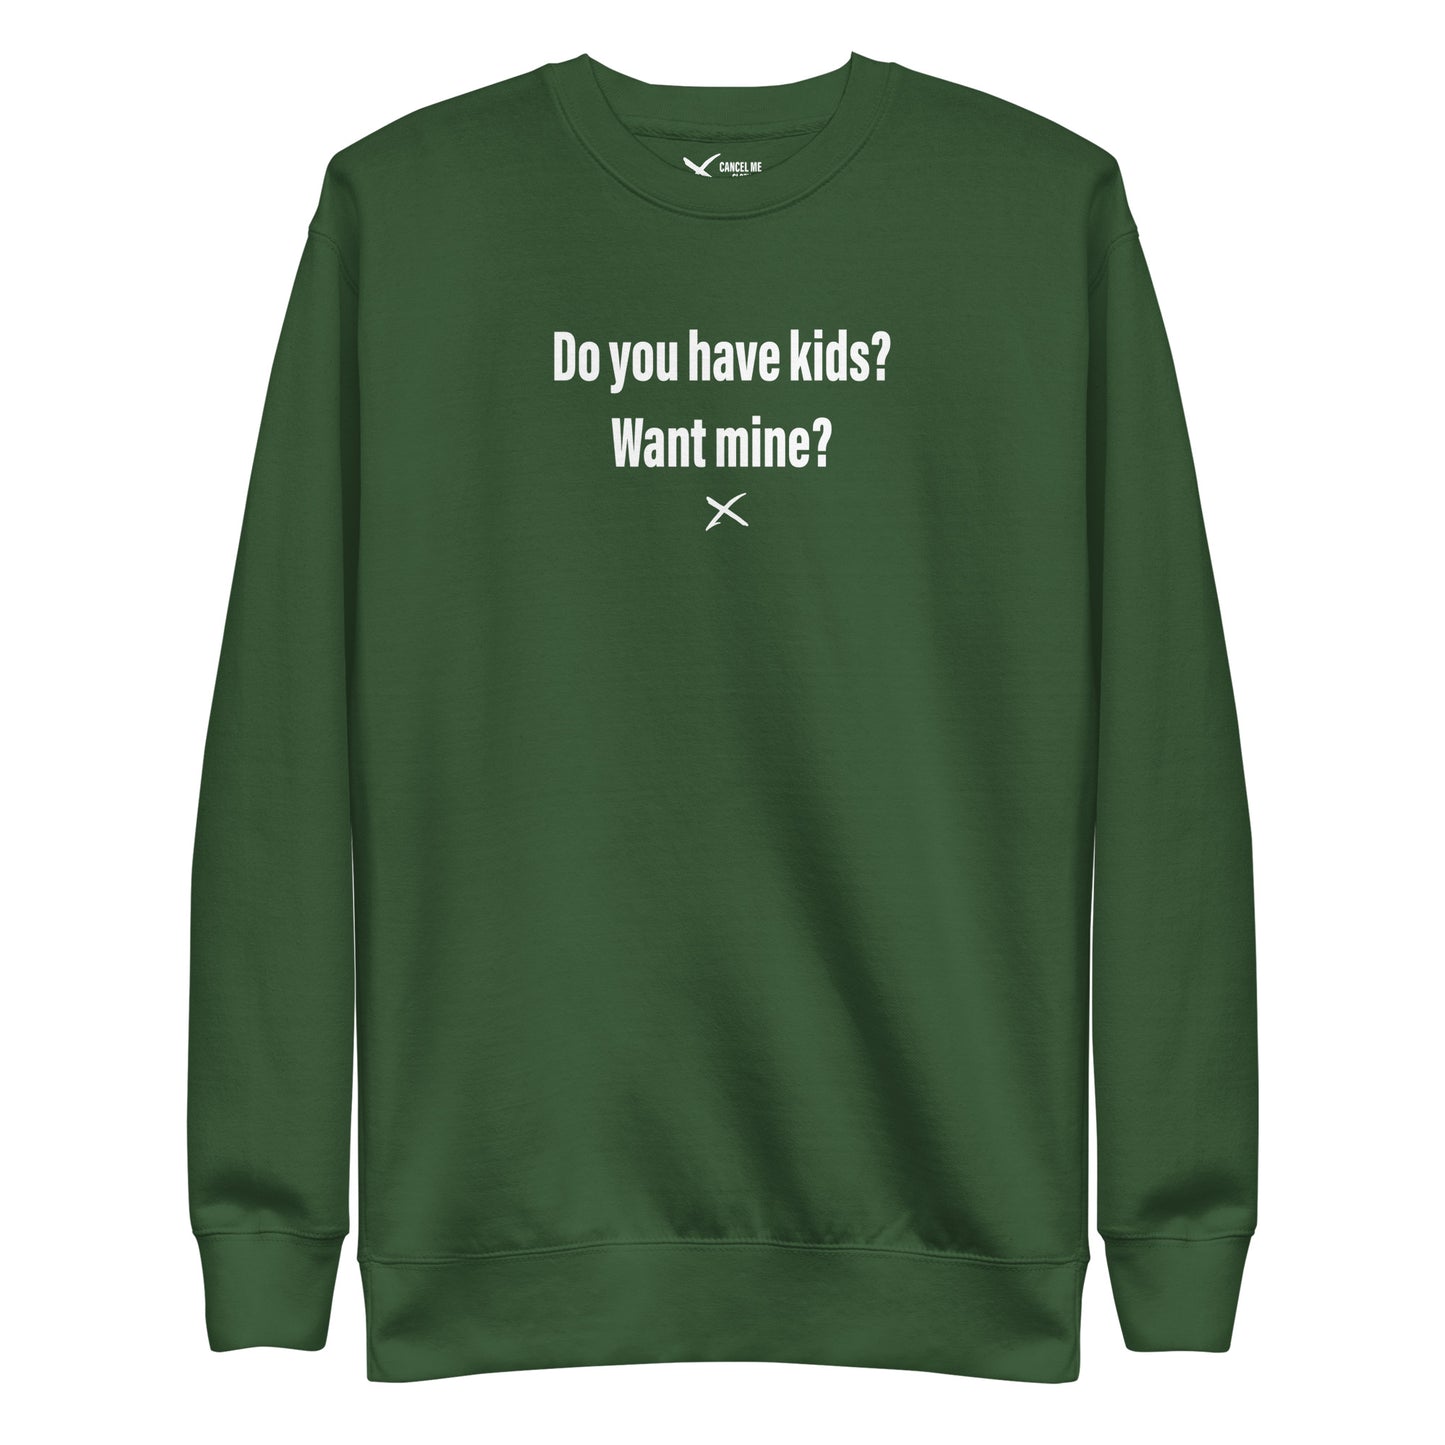 Do you have kids? Want mine? - Sweatshirt